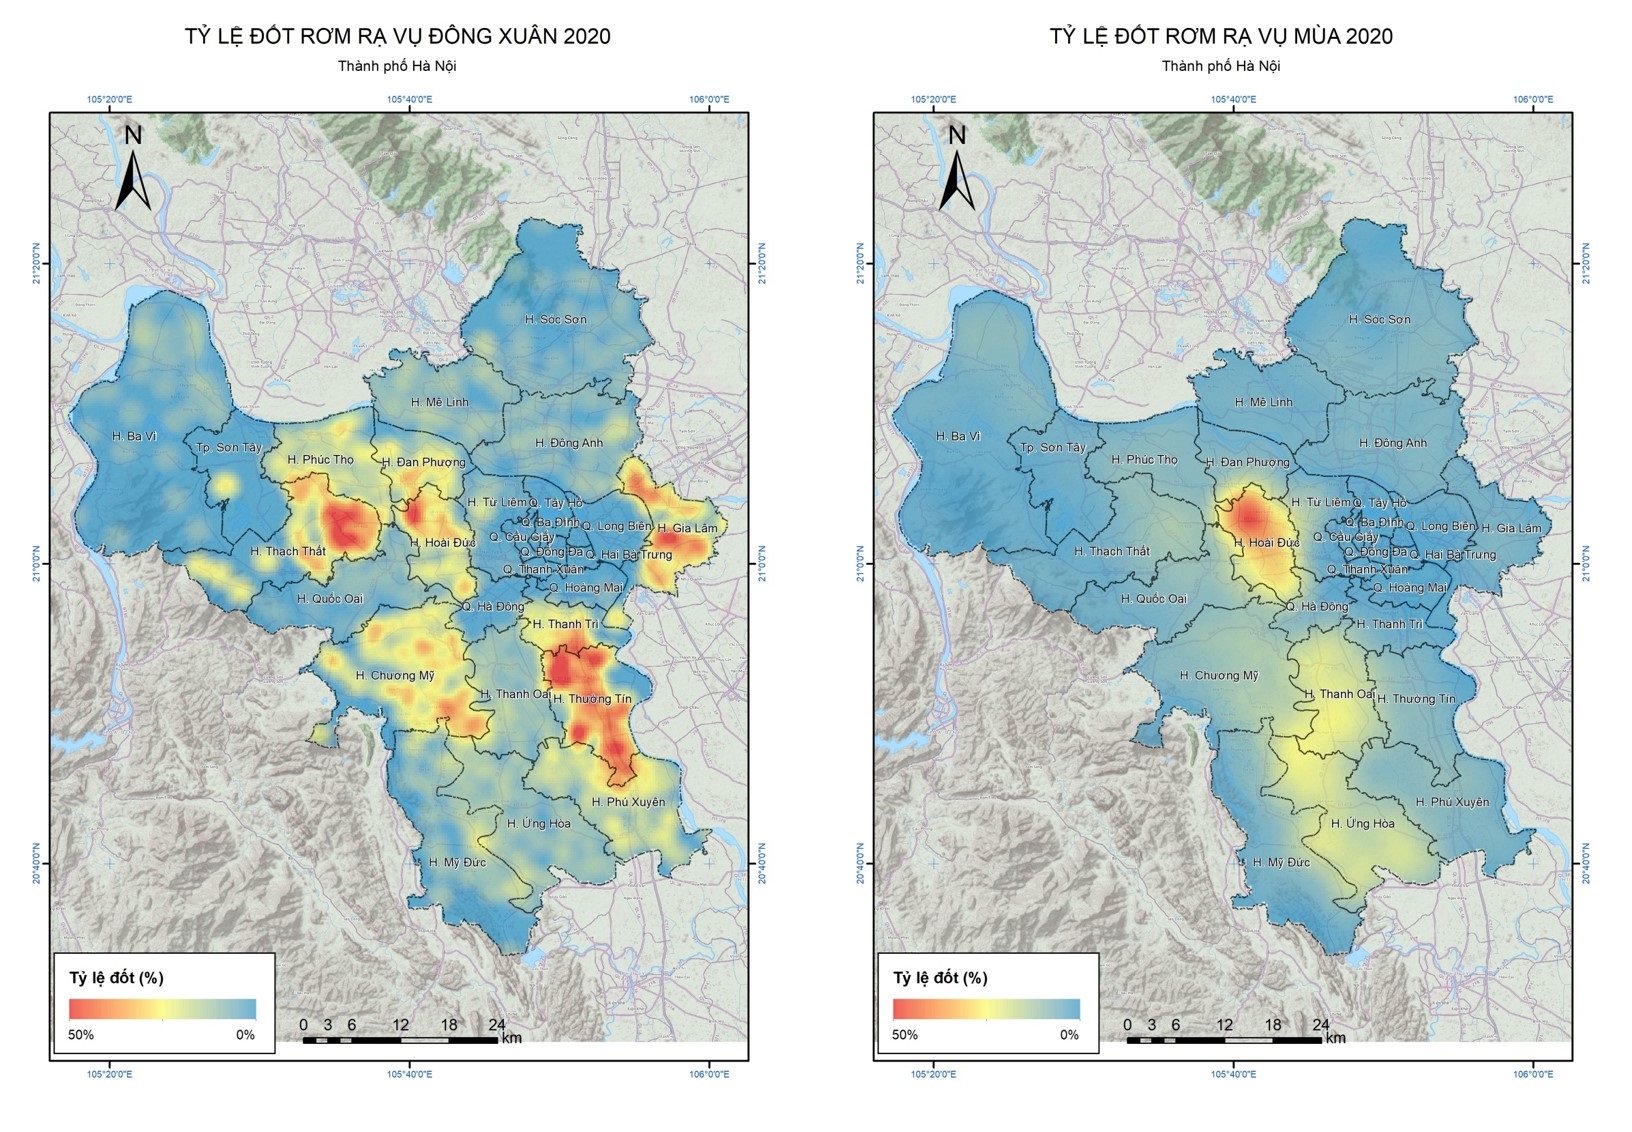 Tỷ lệ đốt rơm rạ vụ Đông-Xuân (trái) và vụ Hè-Thu (phải) tại Hà Nội năm 2020 | Nguồn: H.A Lê et el, 2020